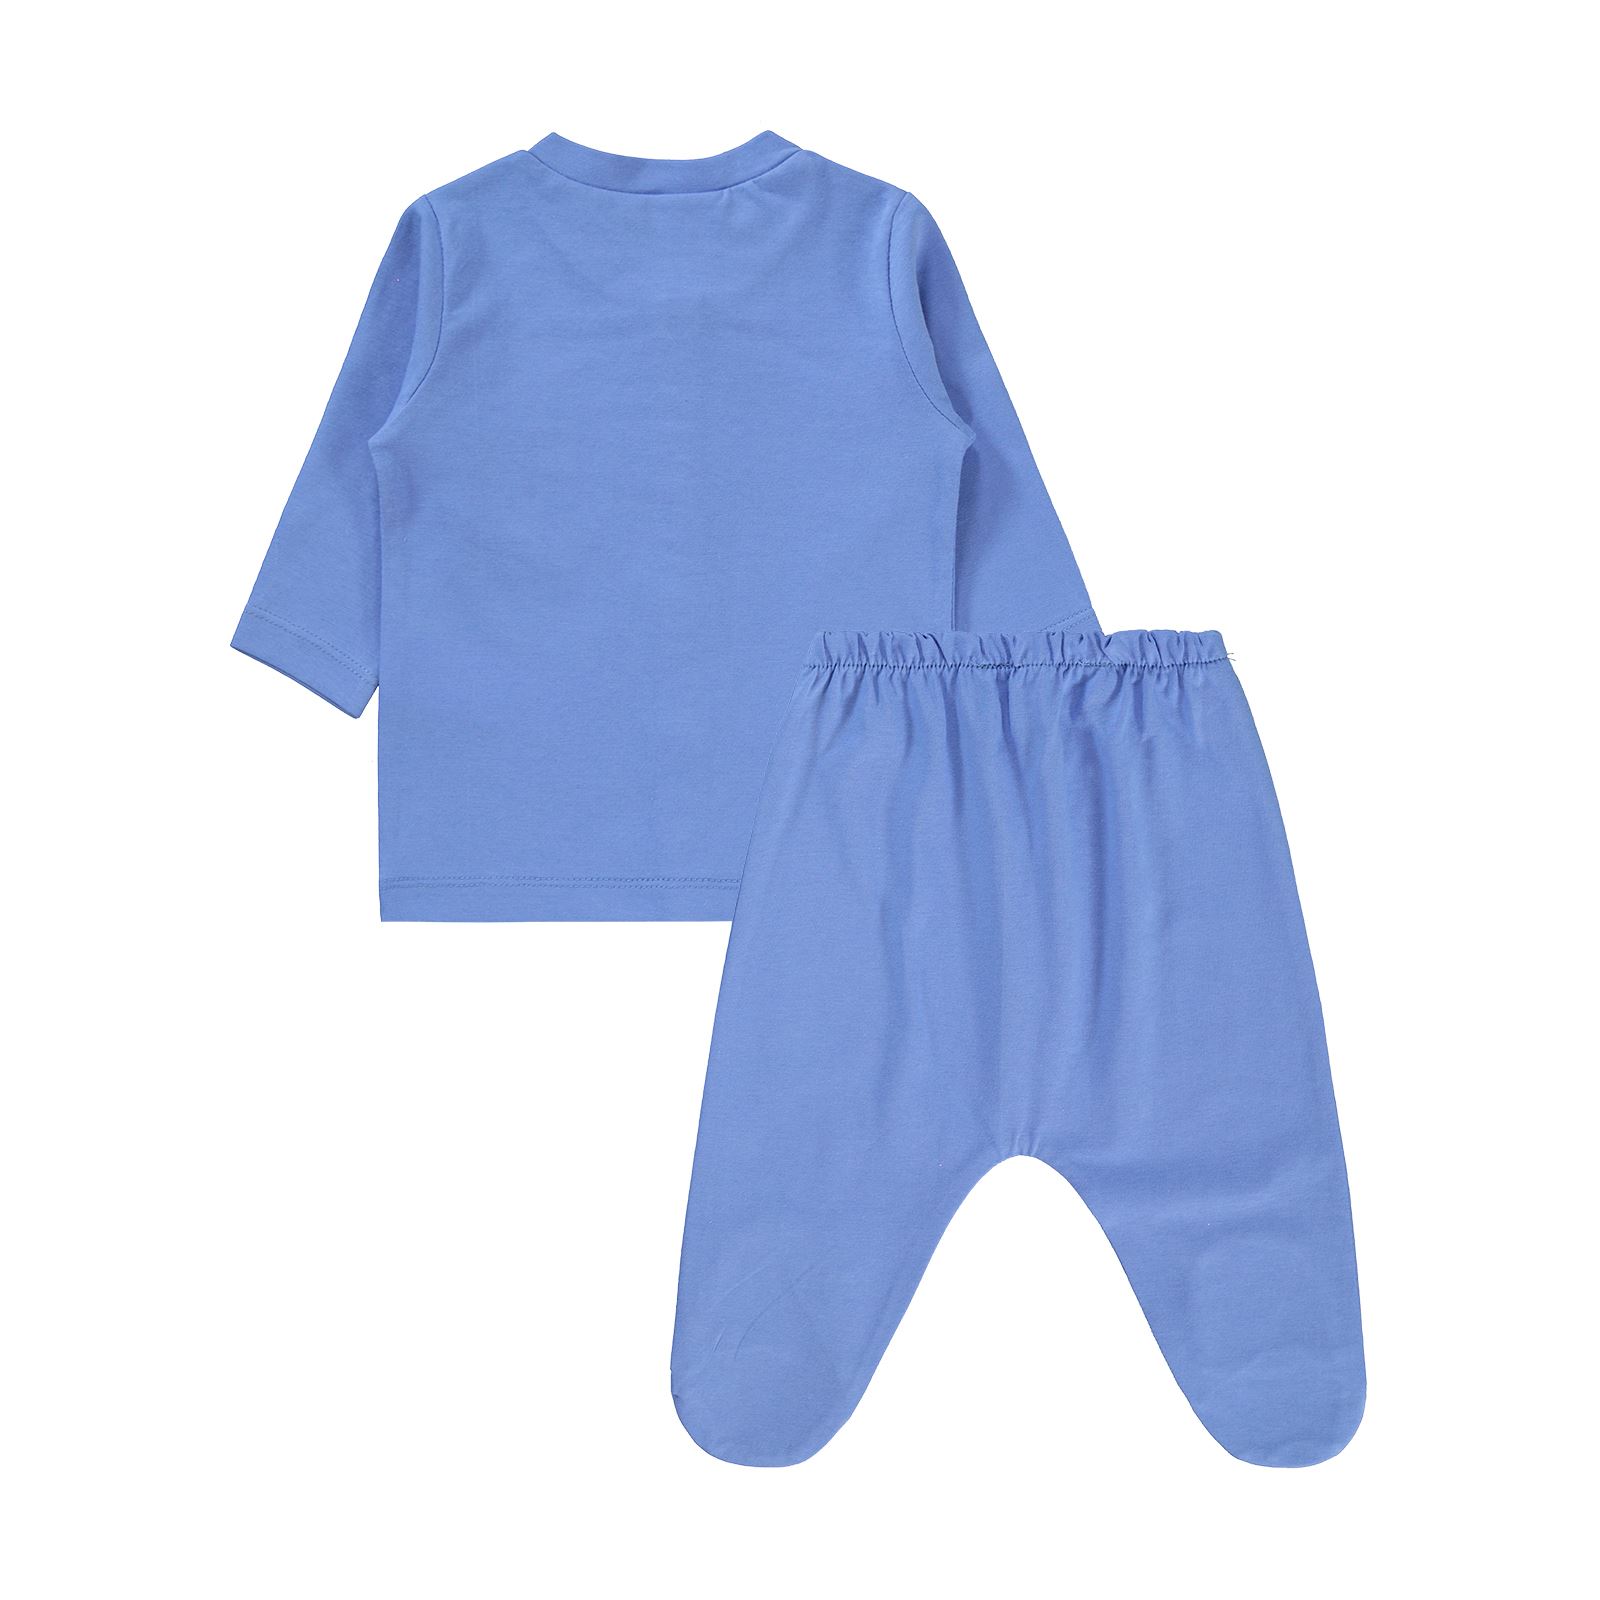 Civil Baby Bebek Pijama Takımı 1-6 Ay Mavi